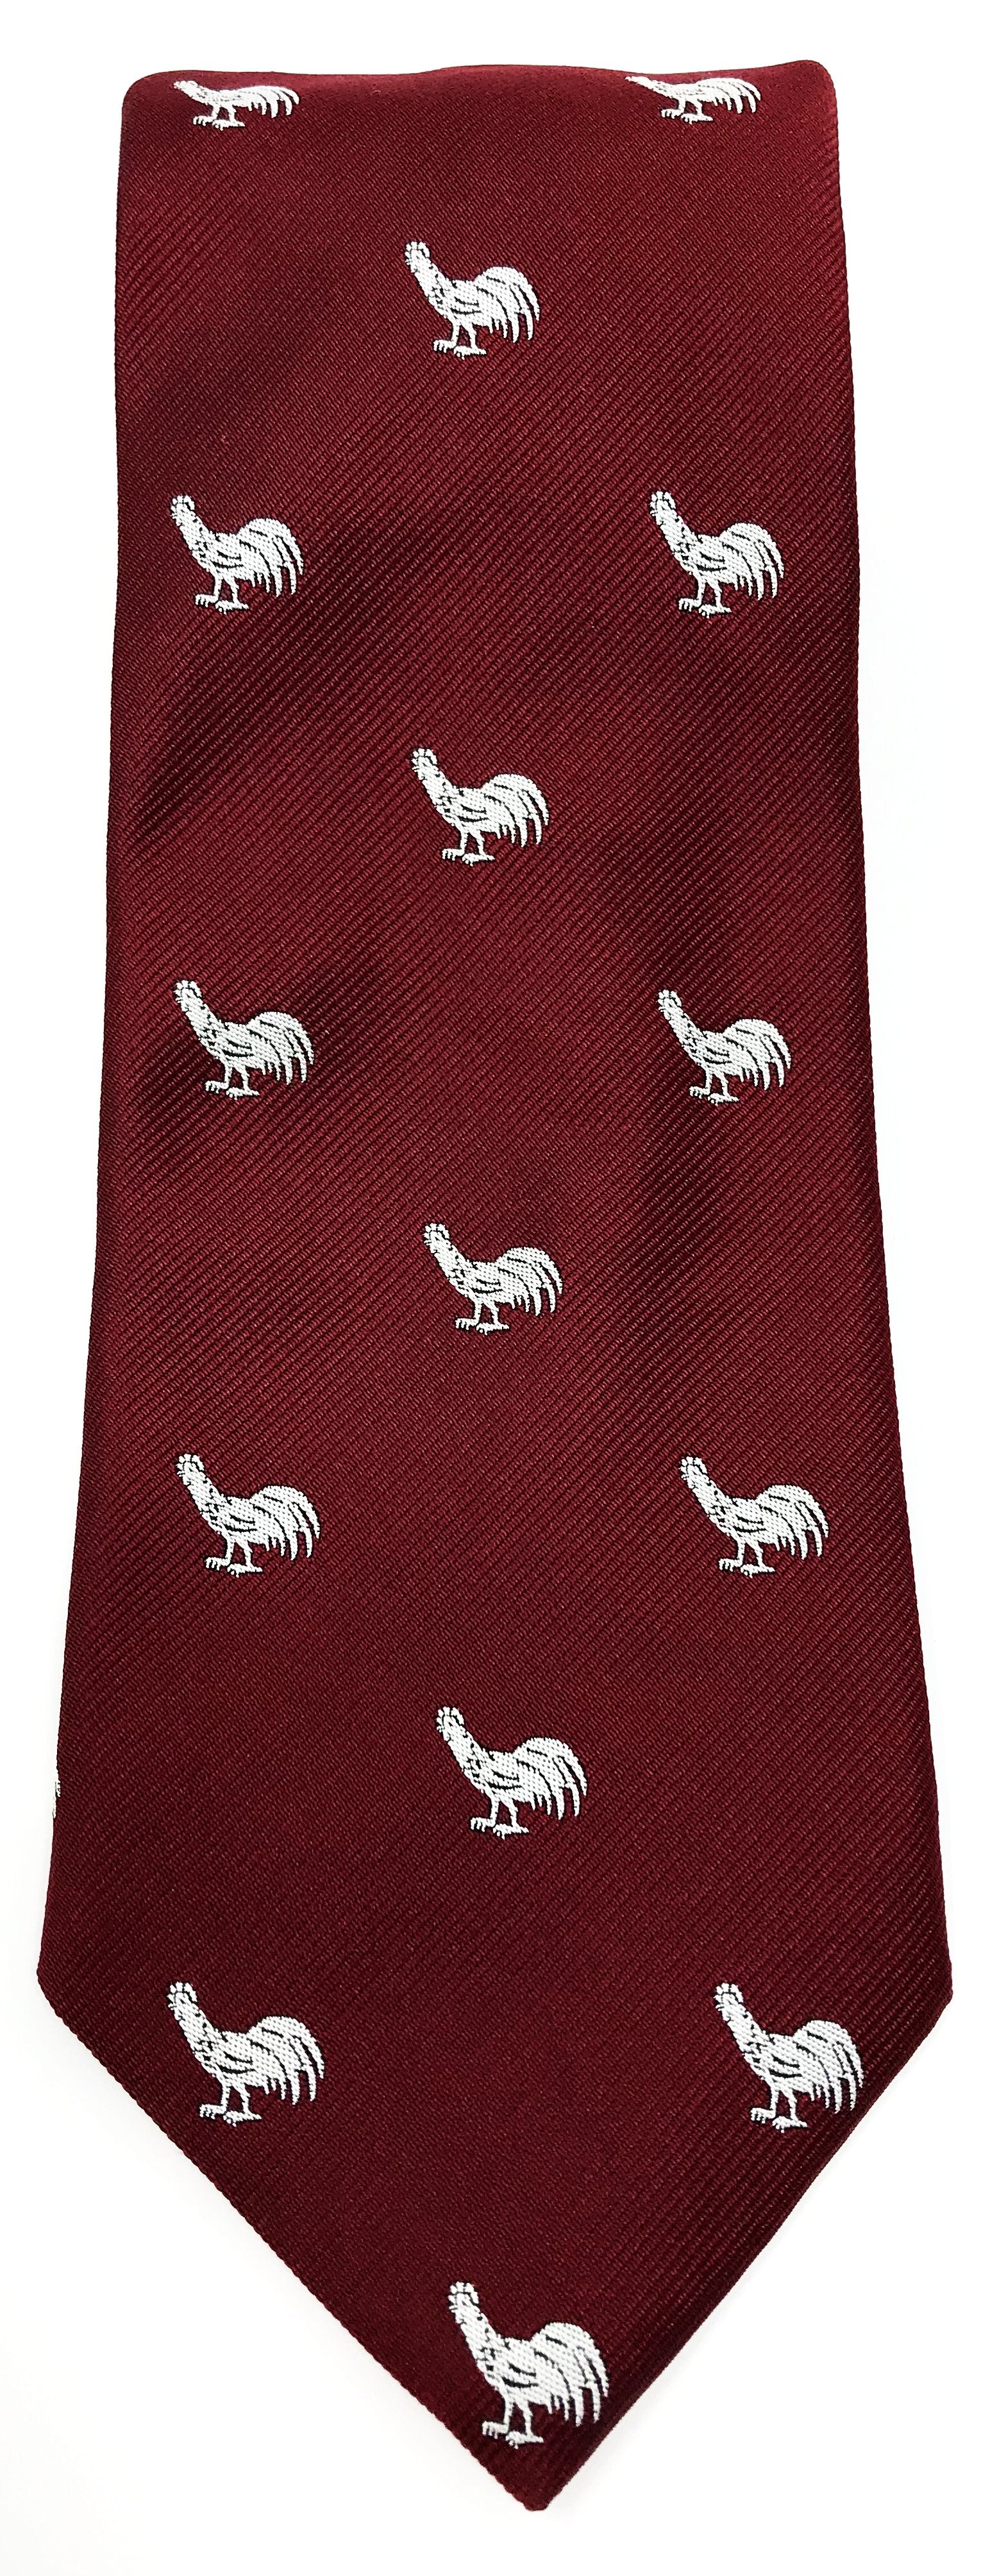 Rooster Repp Tie